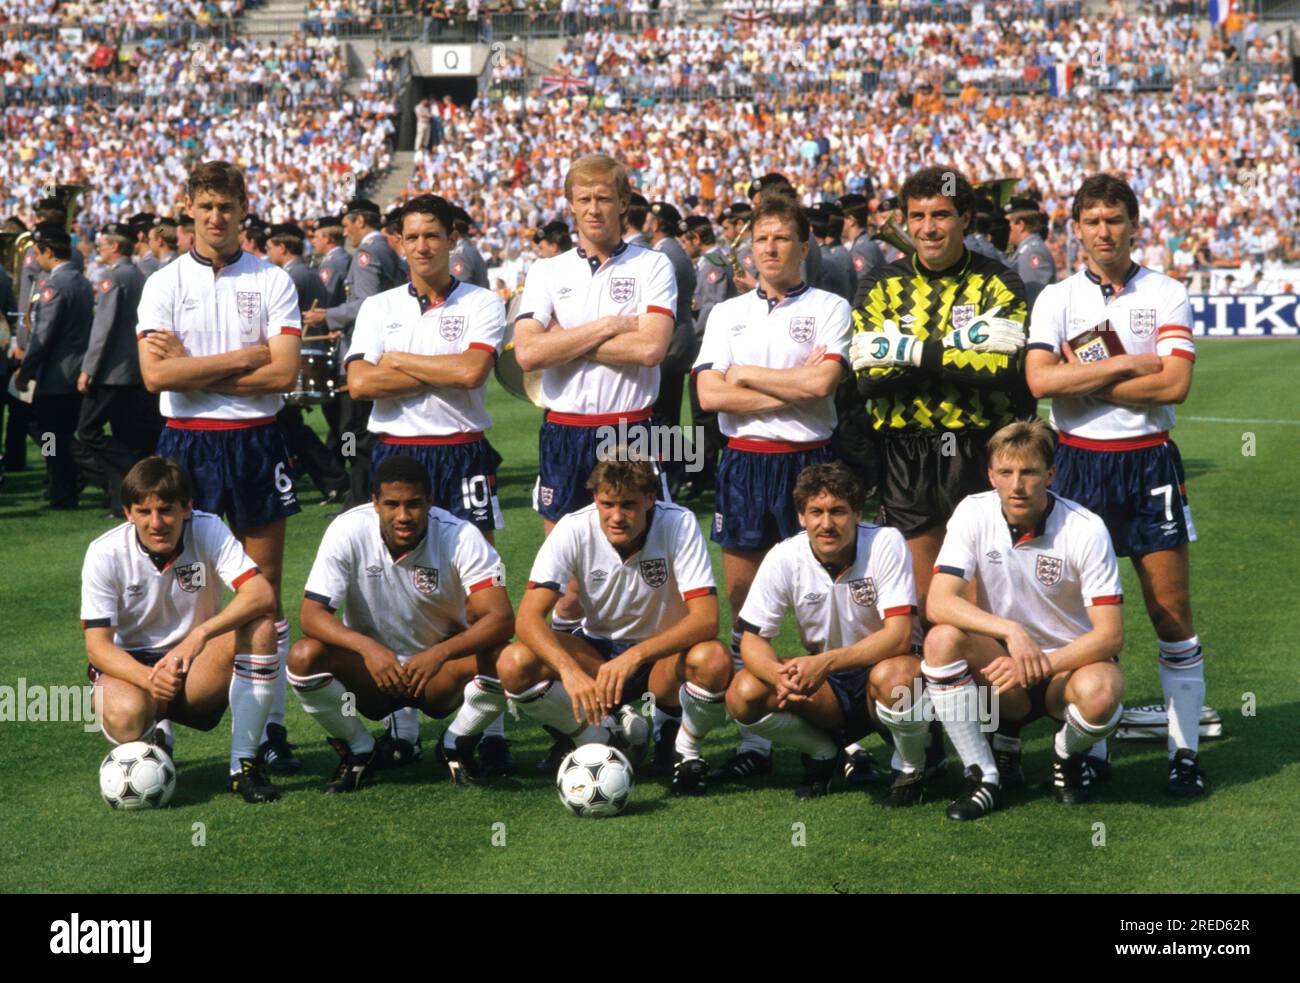 Fußball EM 1988 in Deutschland / England - Niederlande 1:3 /15.06.1988 in Düsseldorf / Team England [automatisierte Übersetzung] Stockfoto